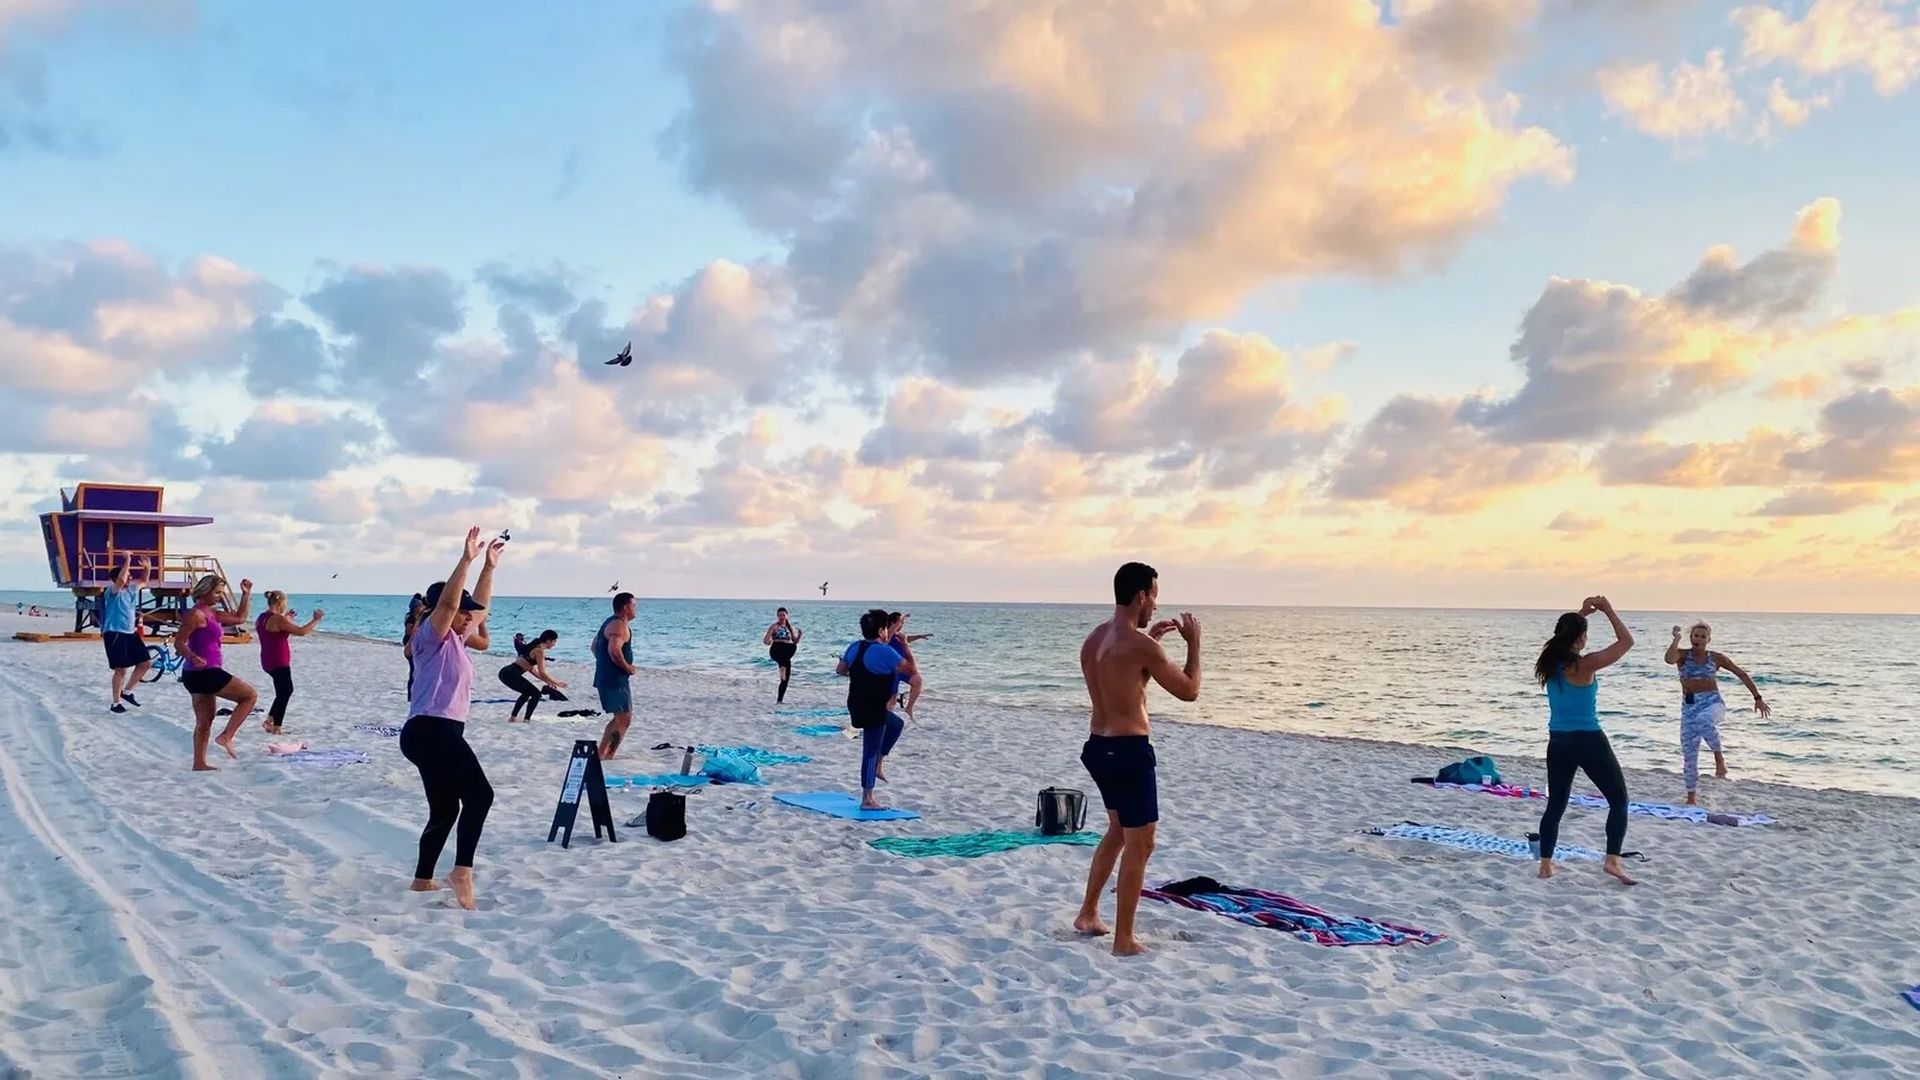 Sunrise Beach Yoga + Club Alo 9/29 (Miami Beach) Tickets, Dates &  Itineraries